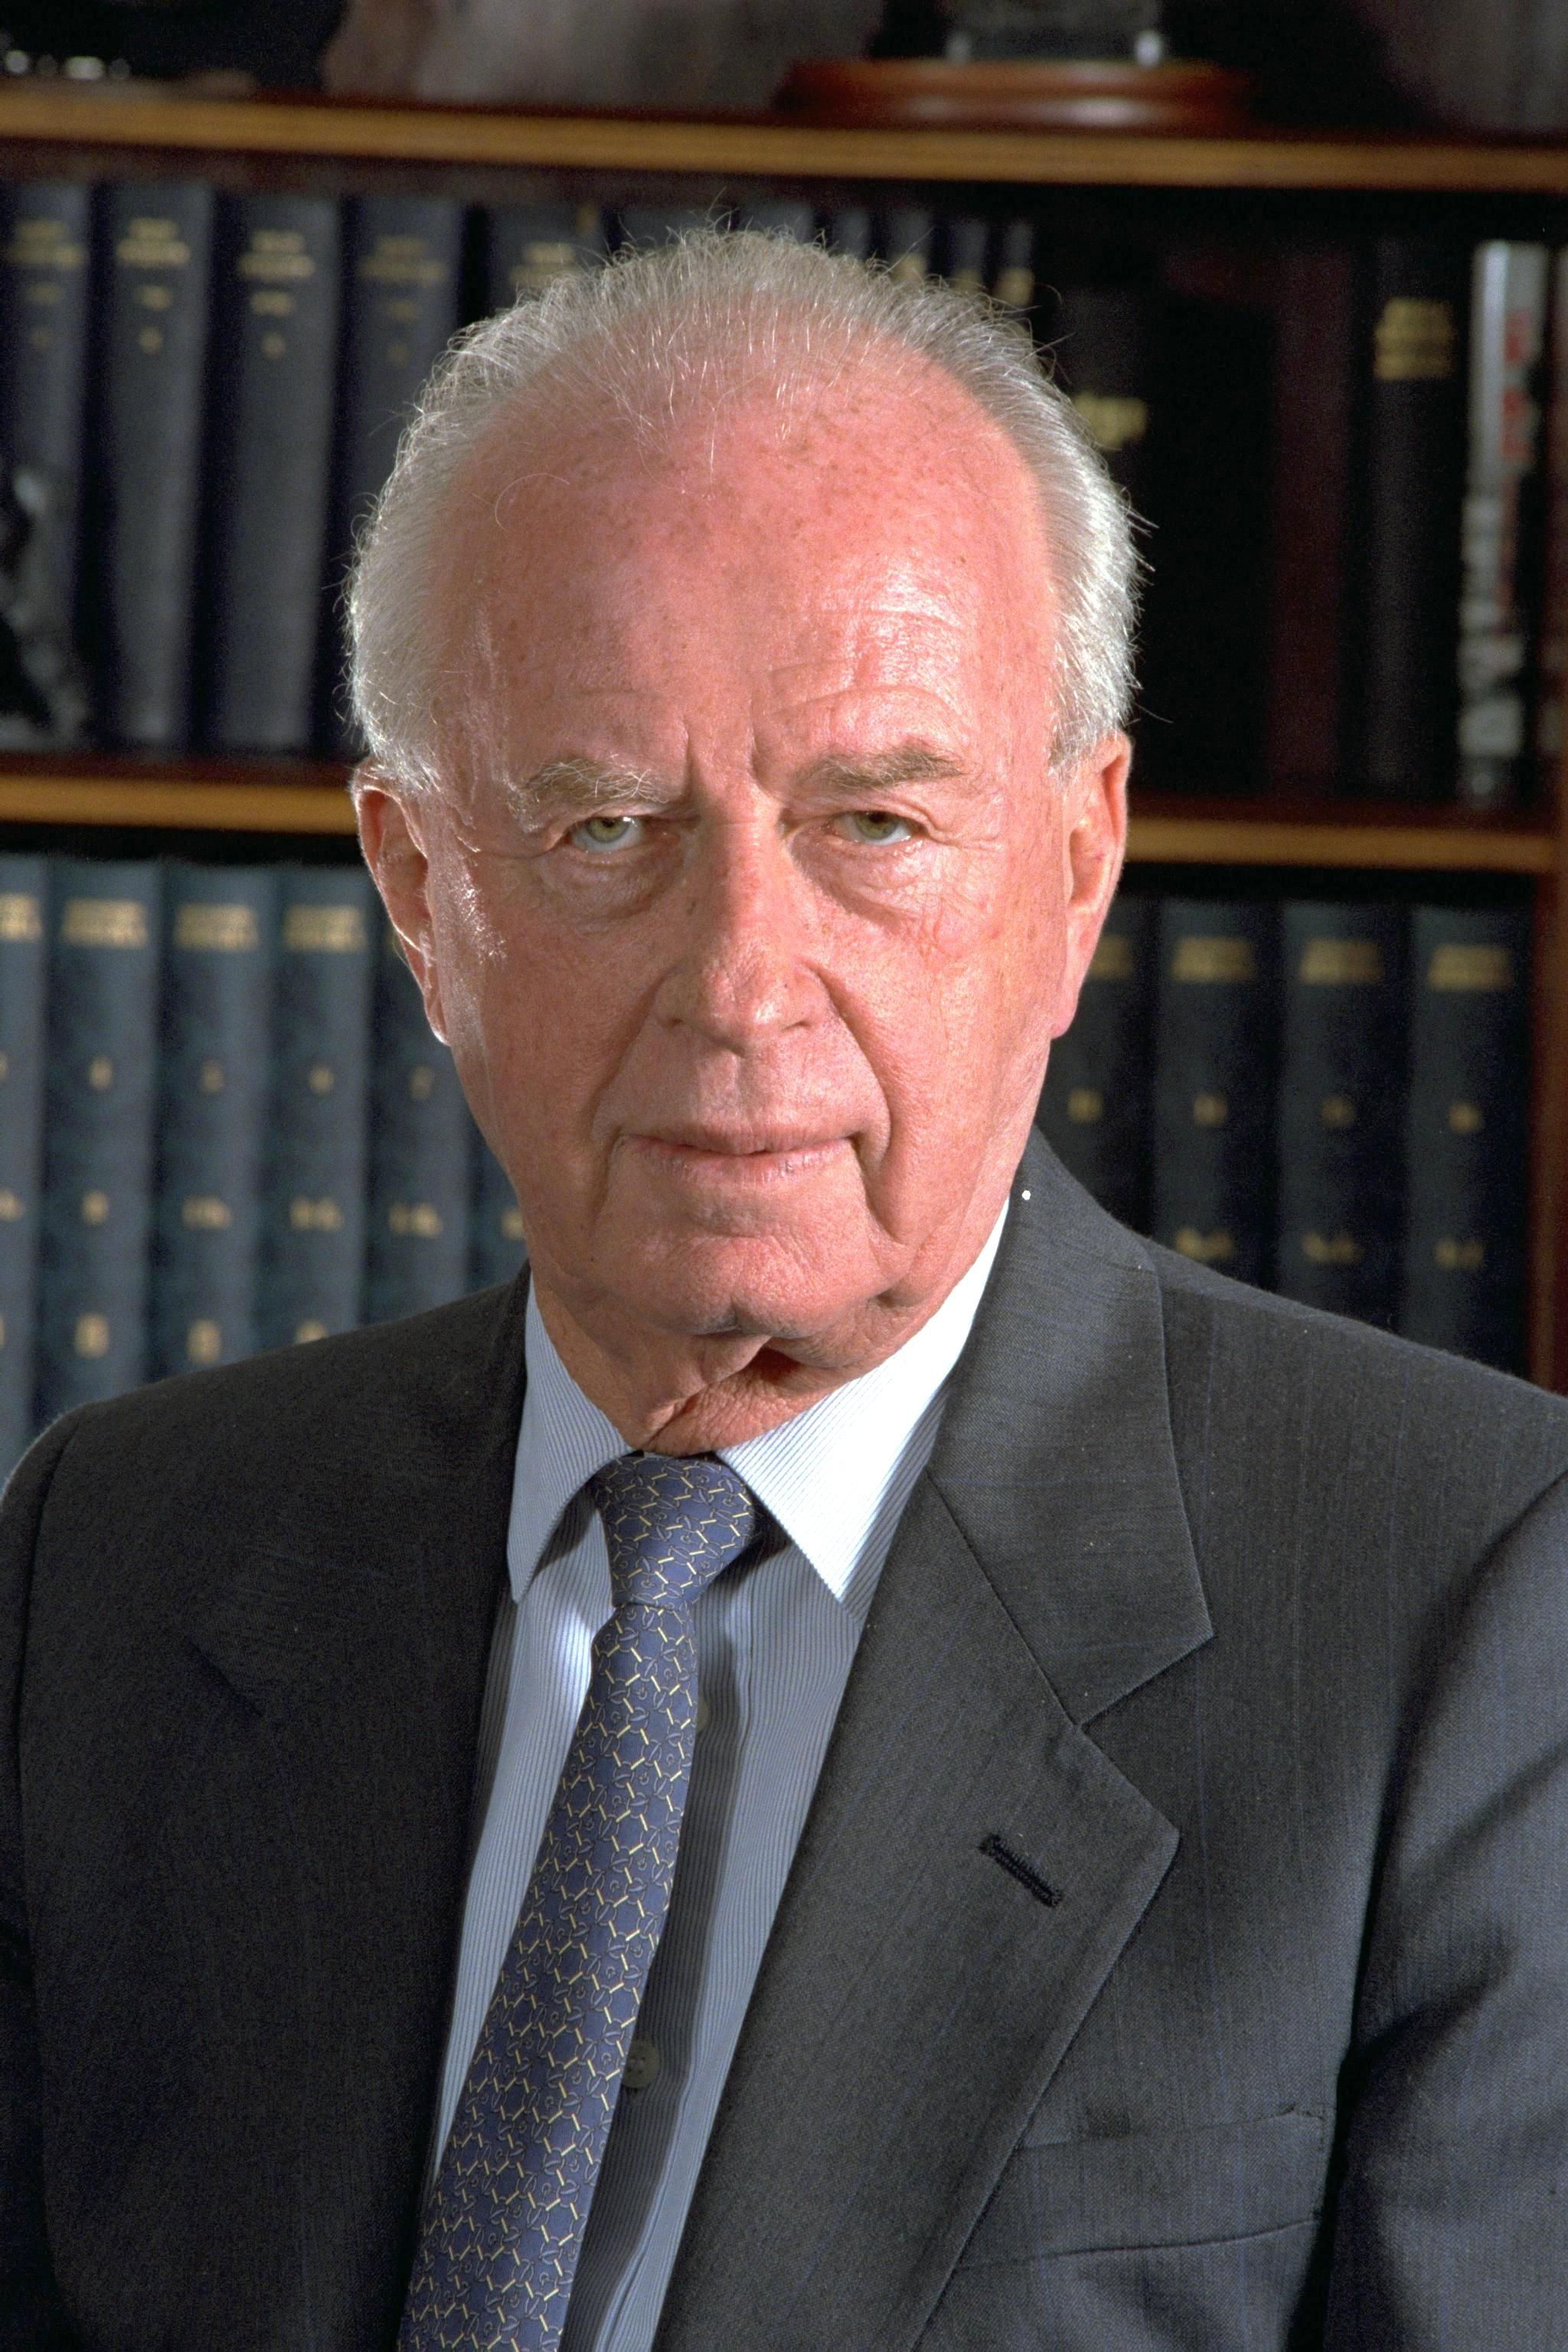 Több tízezres békepárti tüntetéssel emlékeztek Jichák Rabin volt izraeli kormányfőre